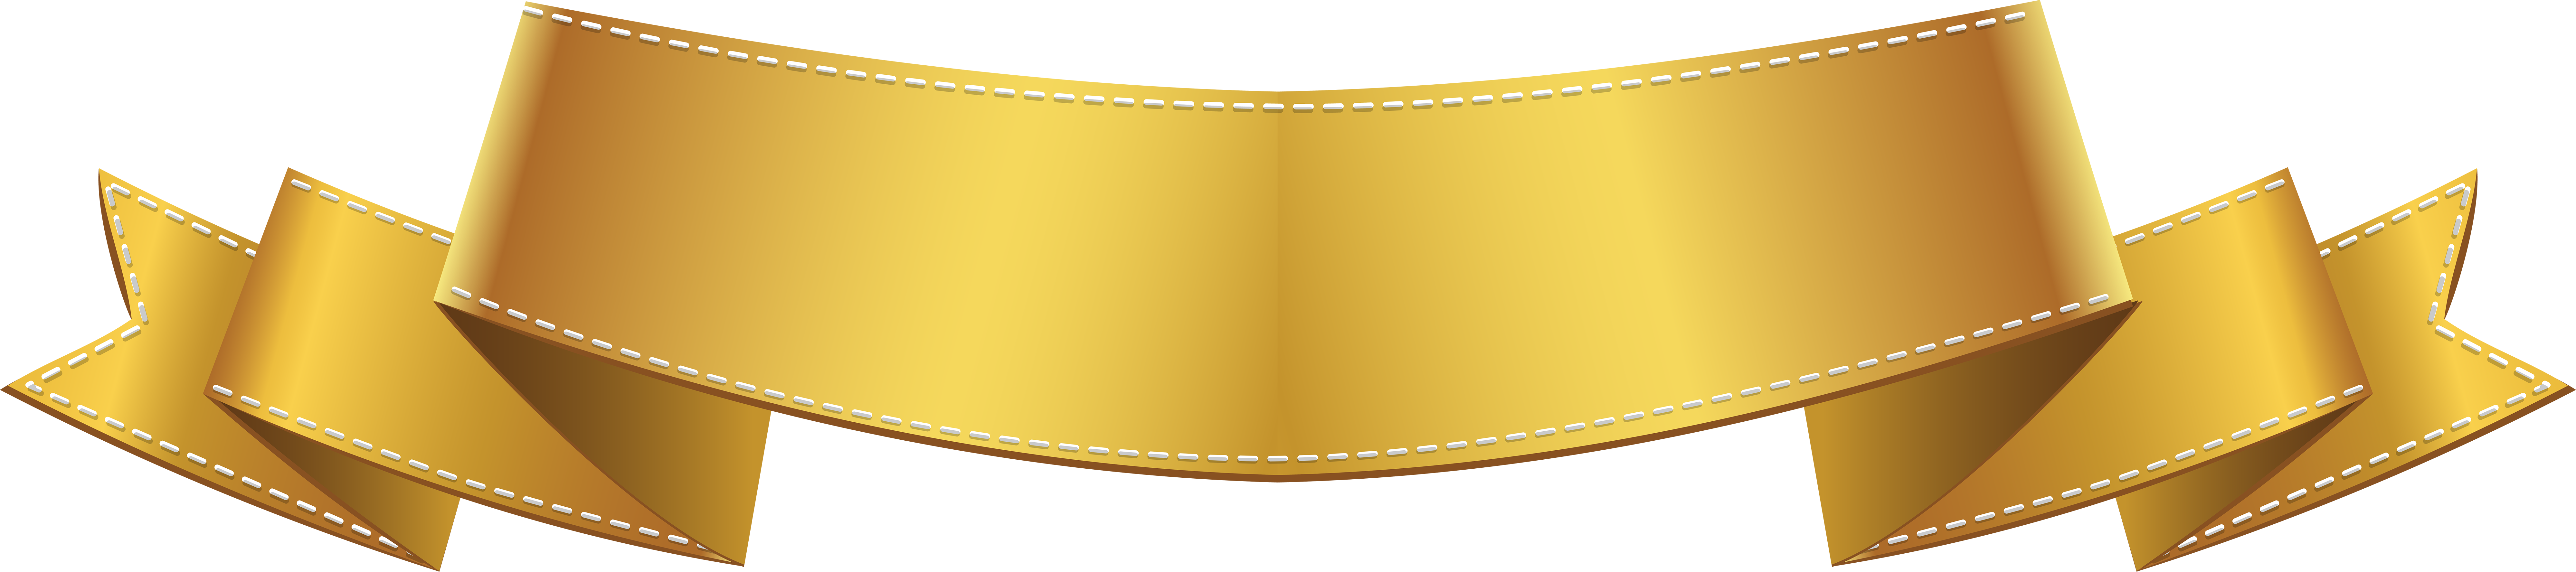 Golden Banner PNG Image Background